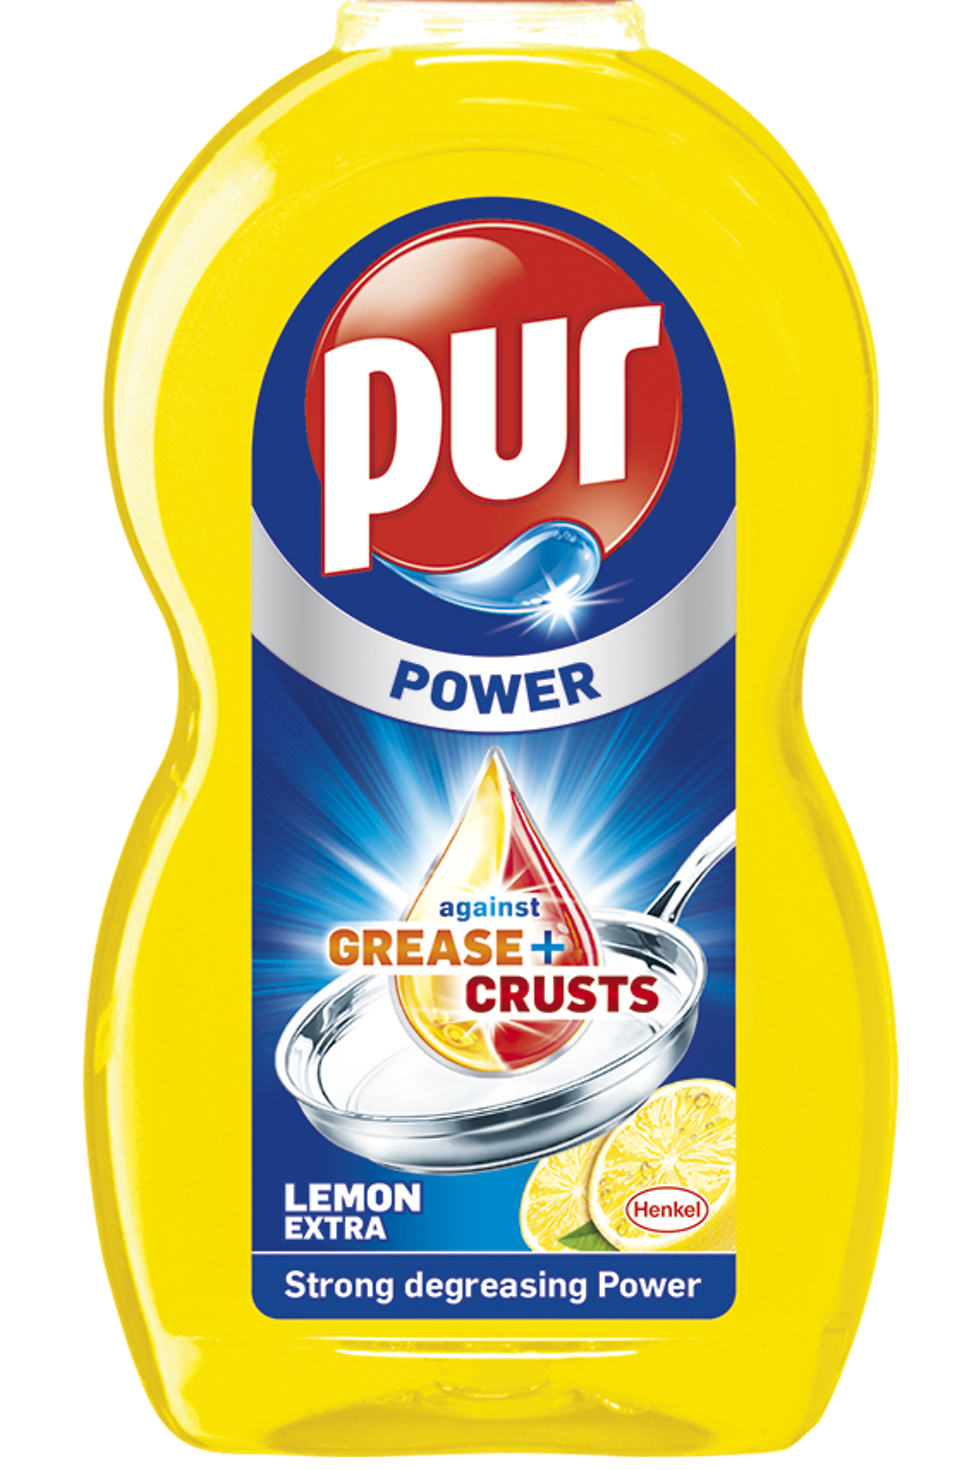 
Pur Power 450 ml